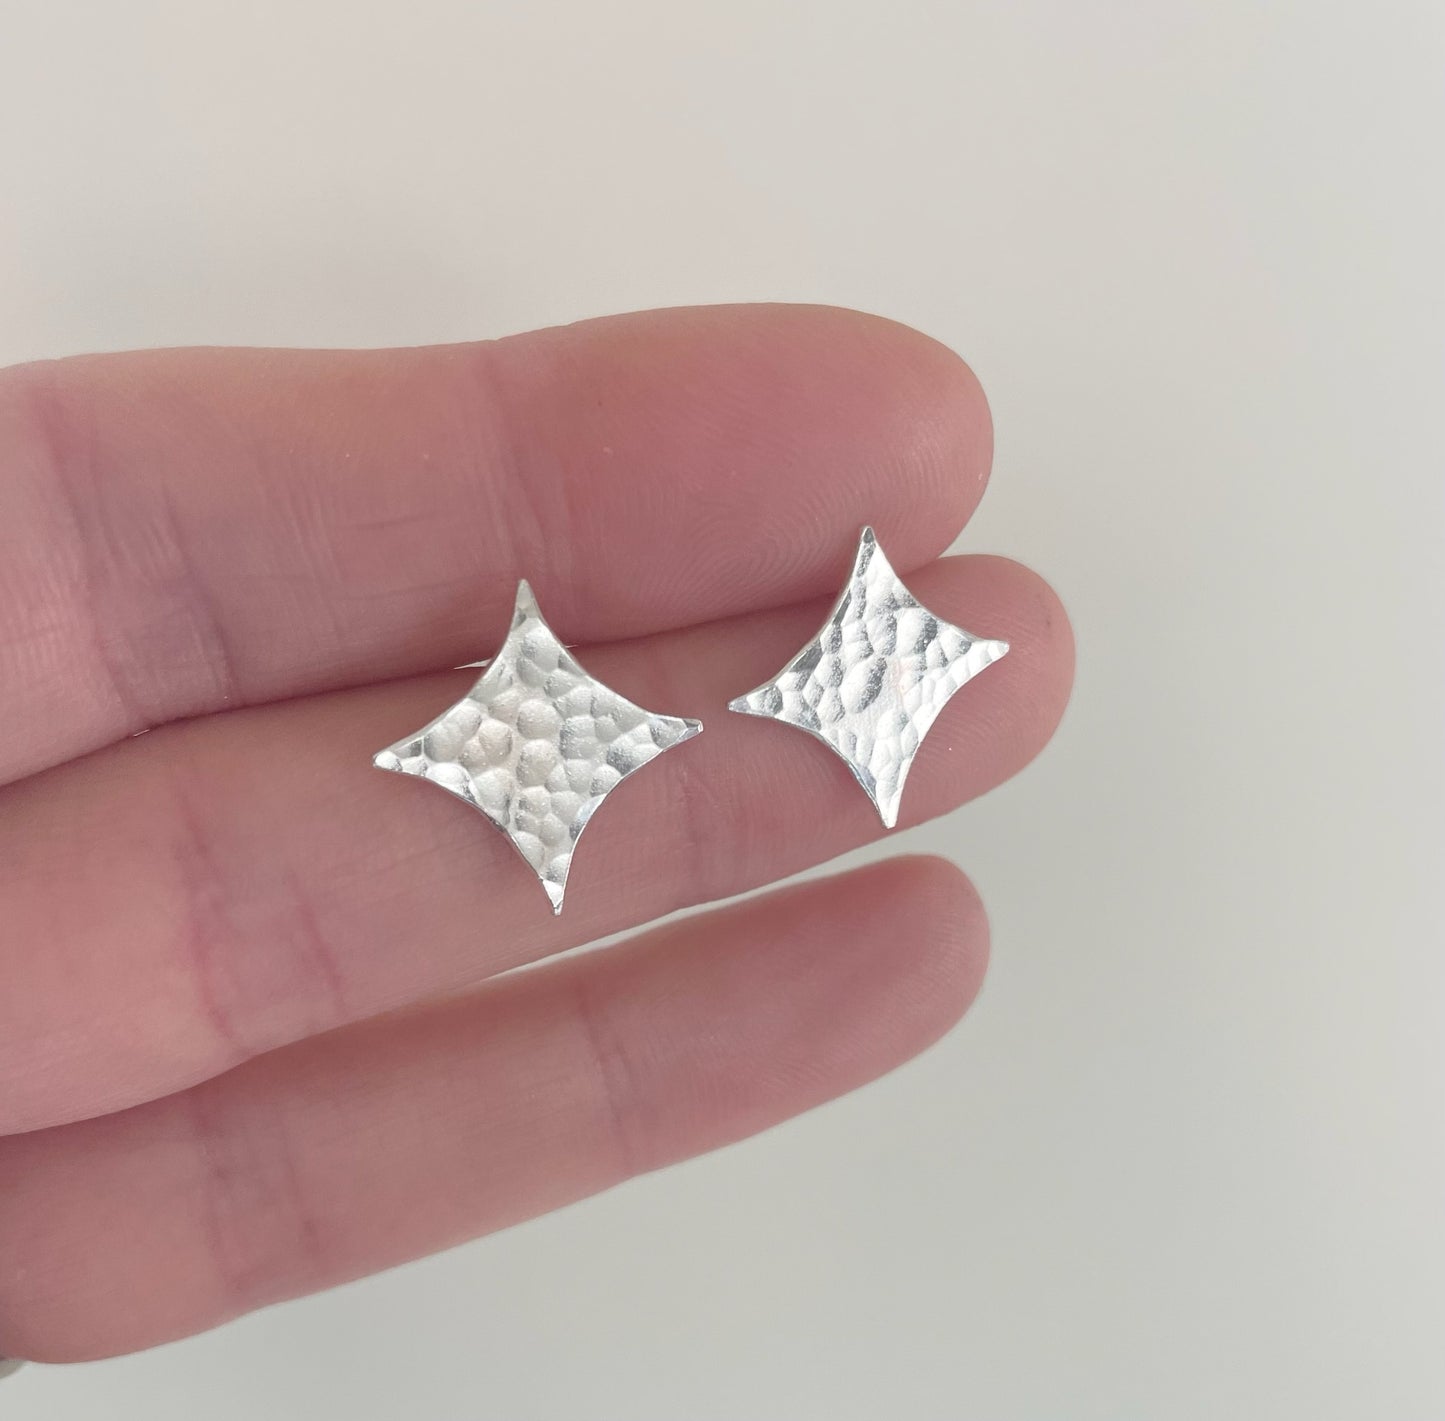 Silver star stud earrings